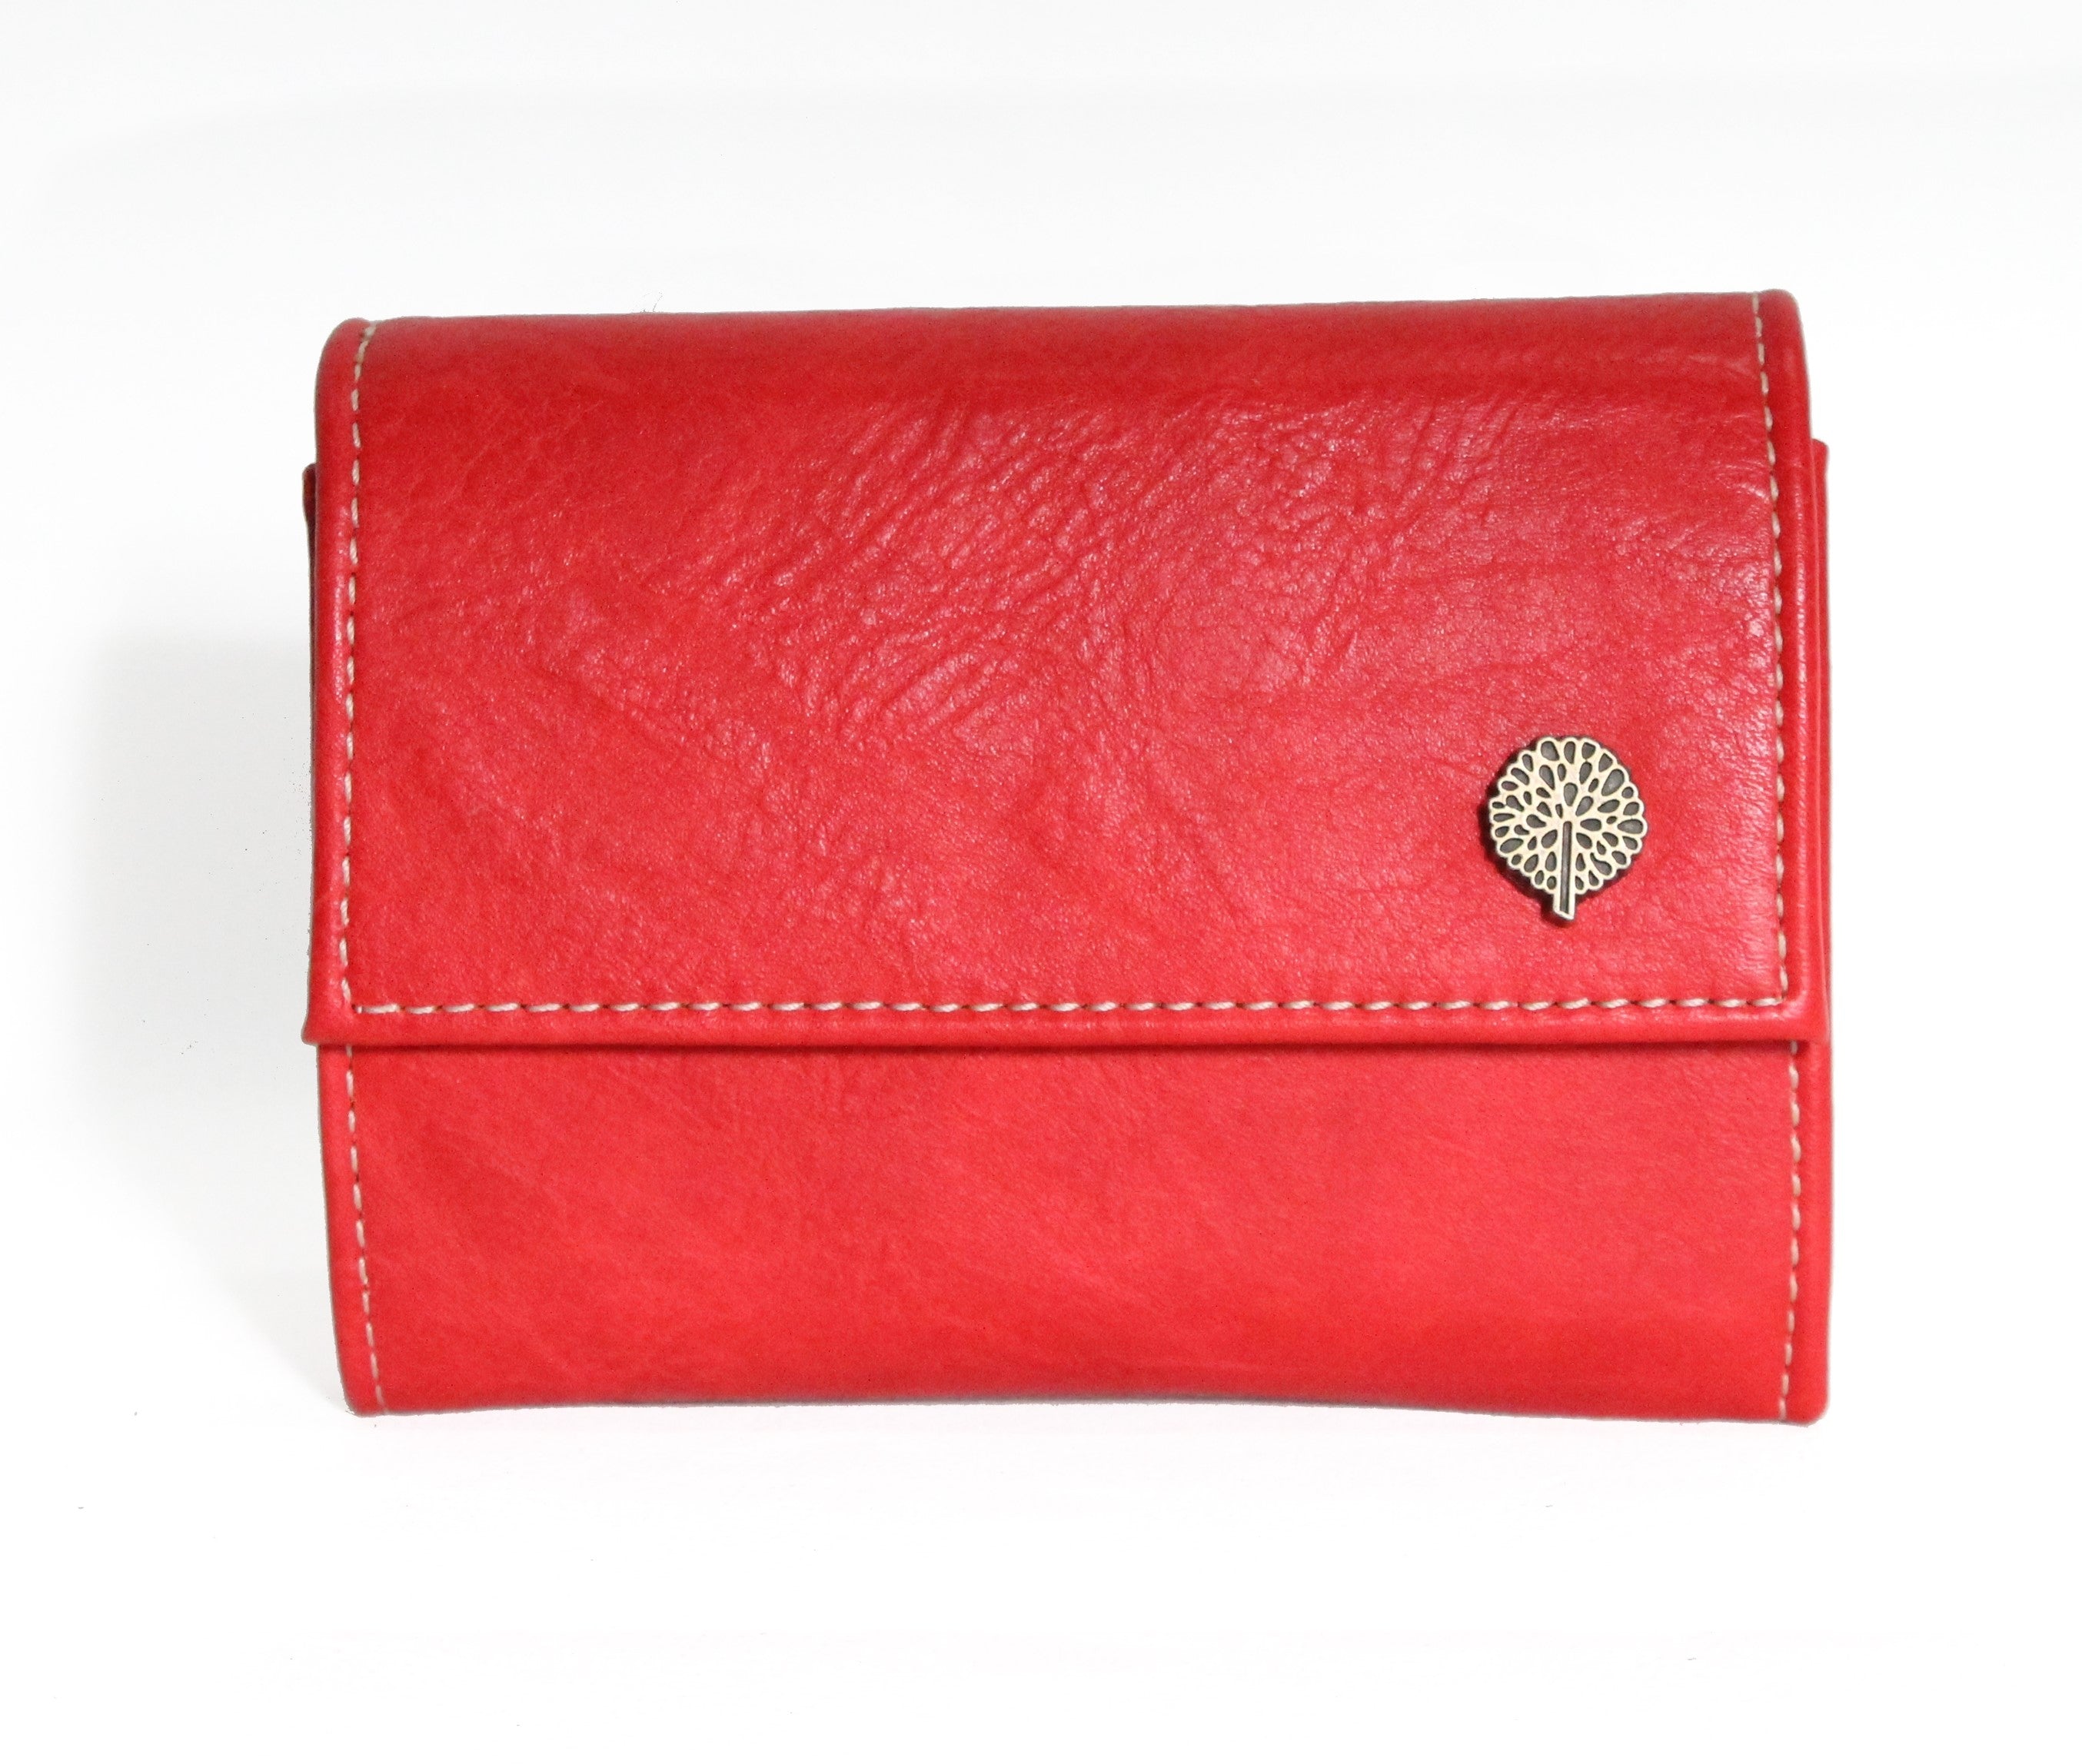 Bella mini purse with clasp